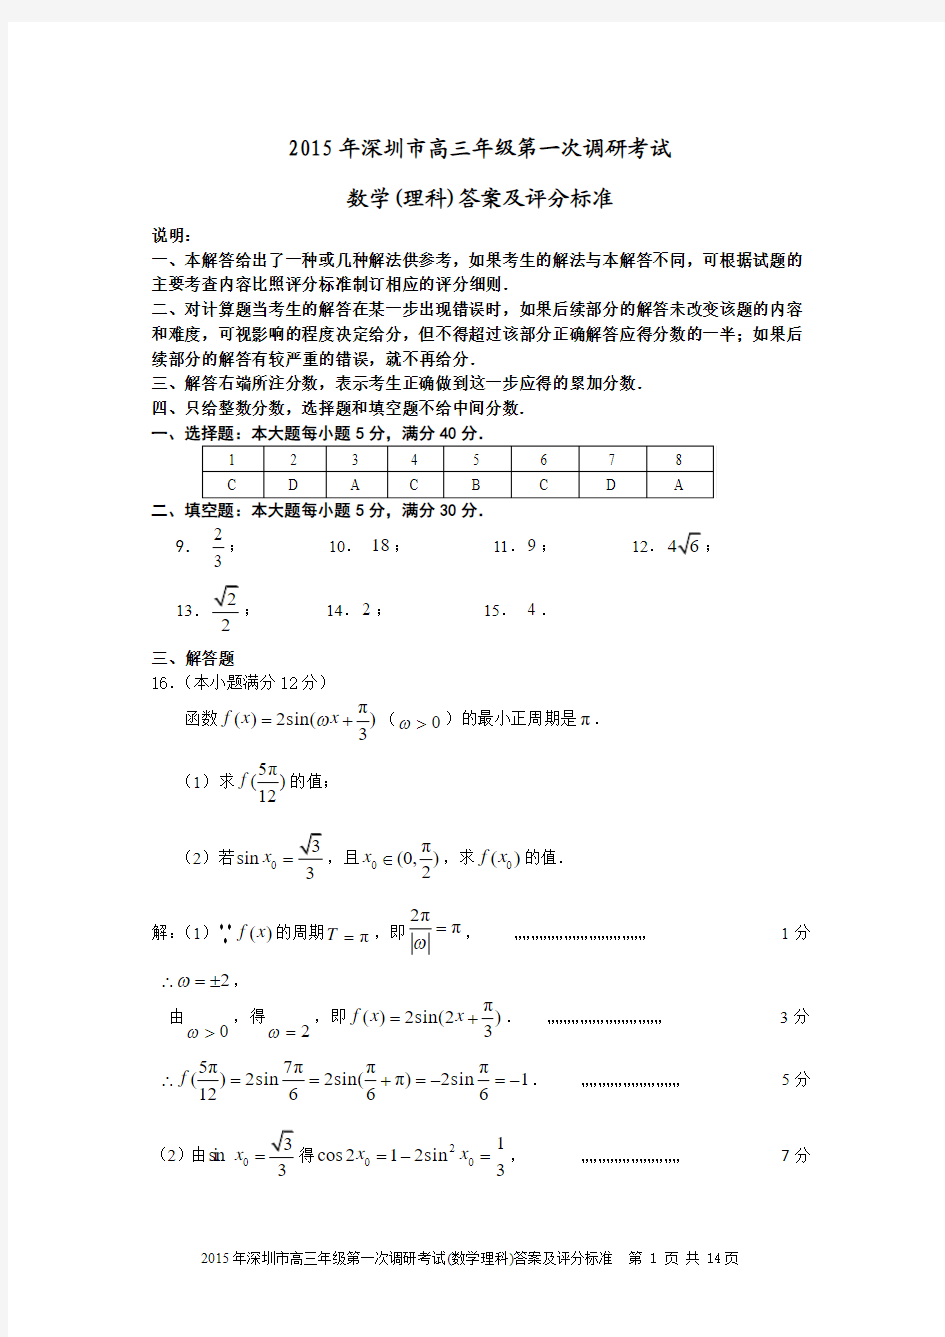 2015年深圳市高三年级第一次调研考试理科数学试题答案及评分标准